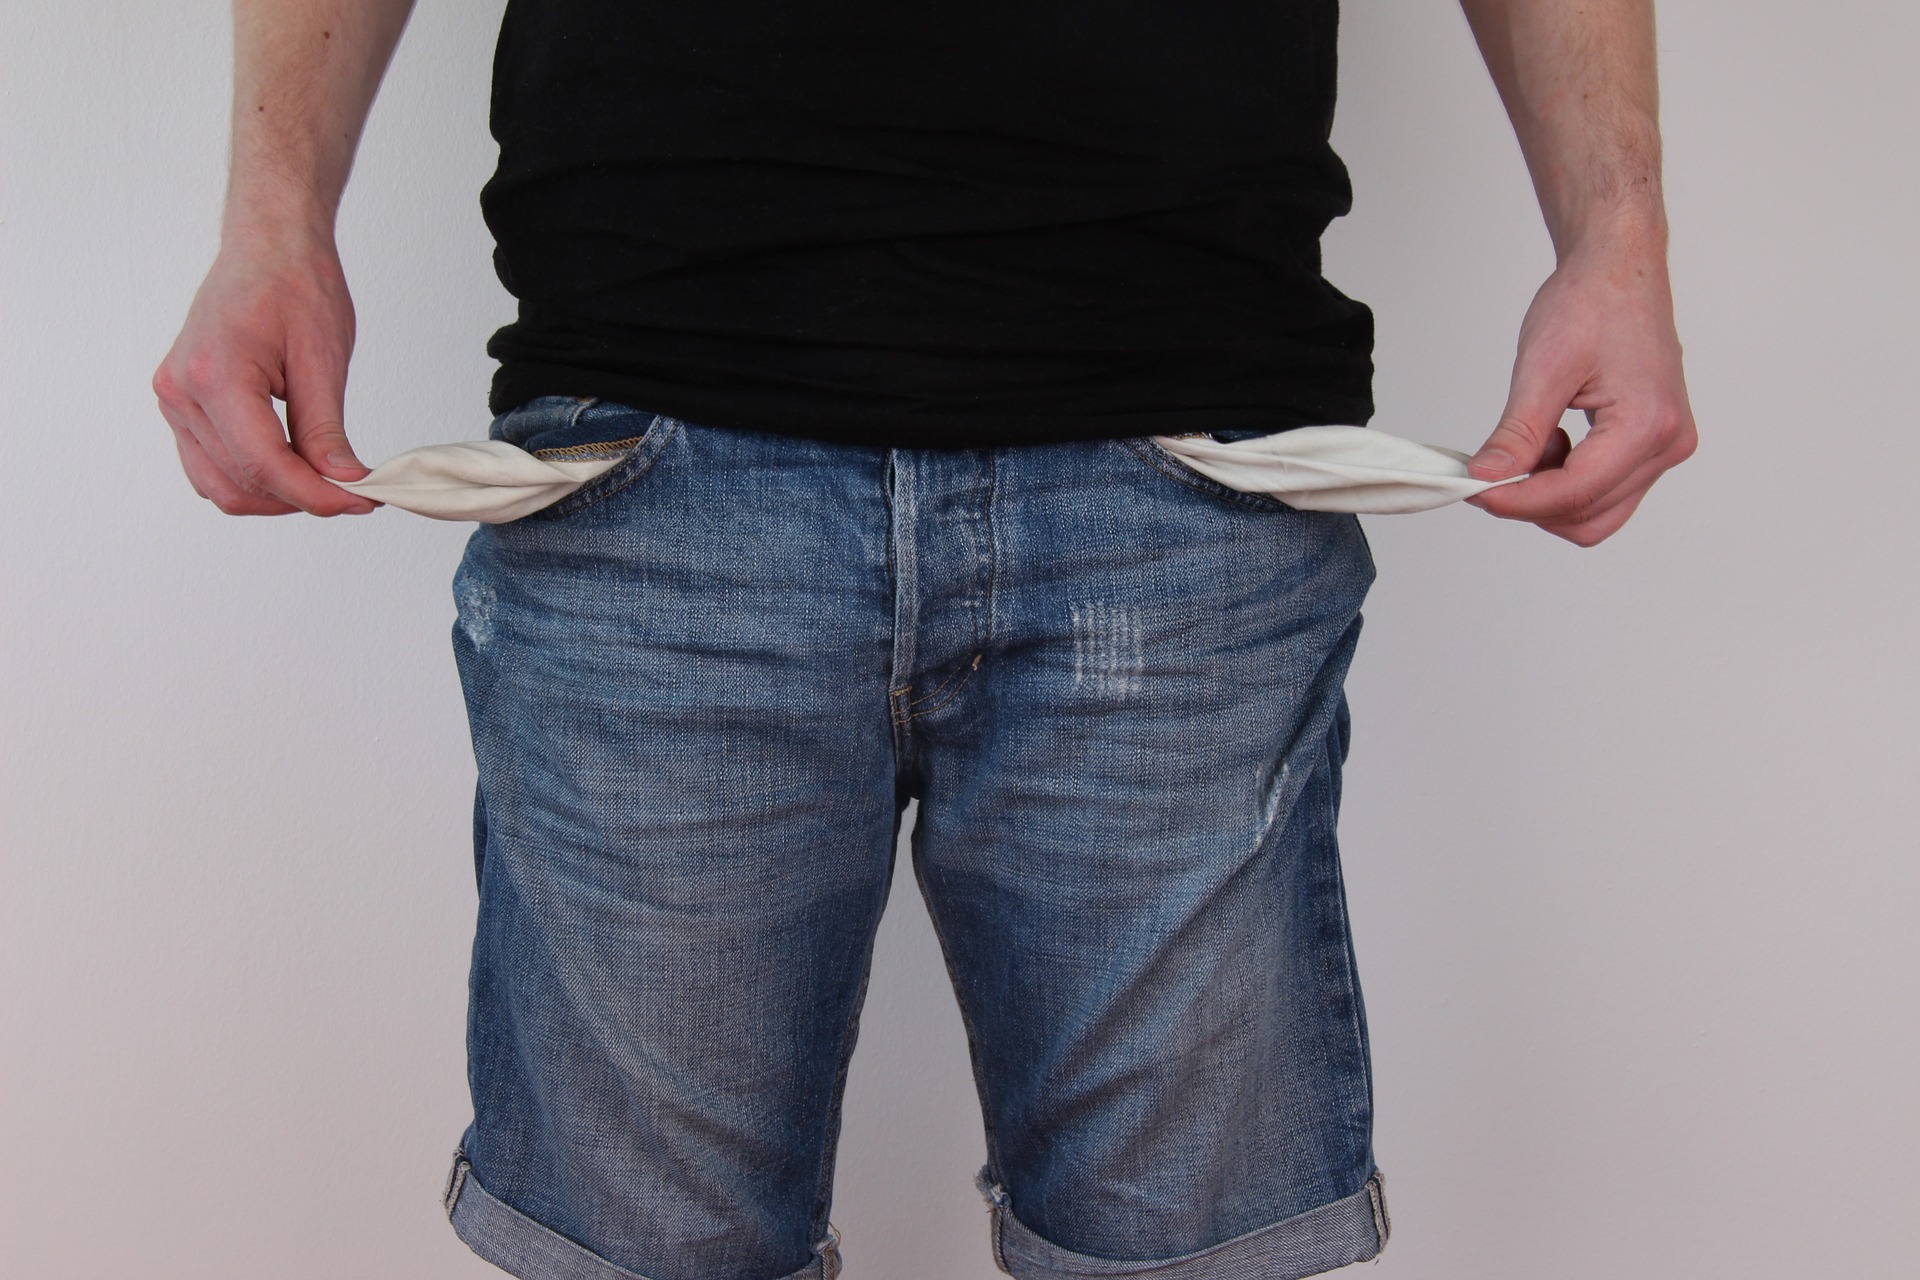 homem de blusa preta e short jeans mostrando como está sem dinheiro. imagem ilustrativa para texto montar negócio com pouco dinheiro.